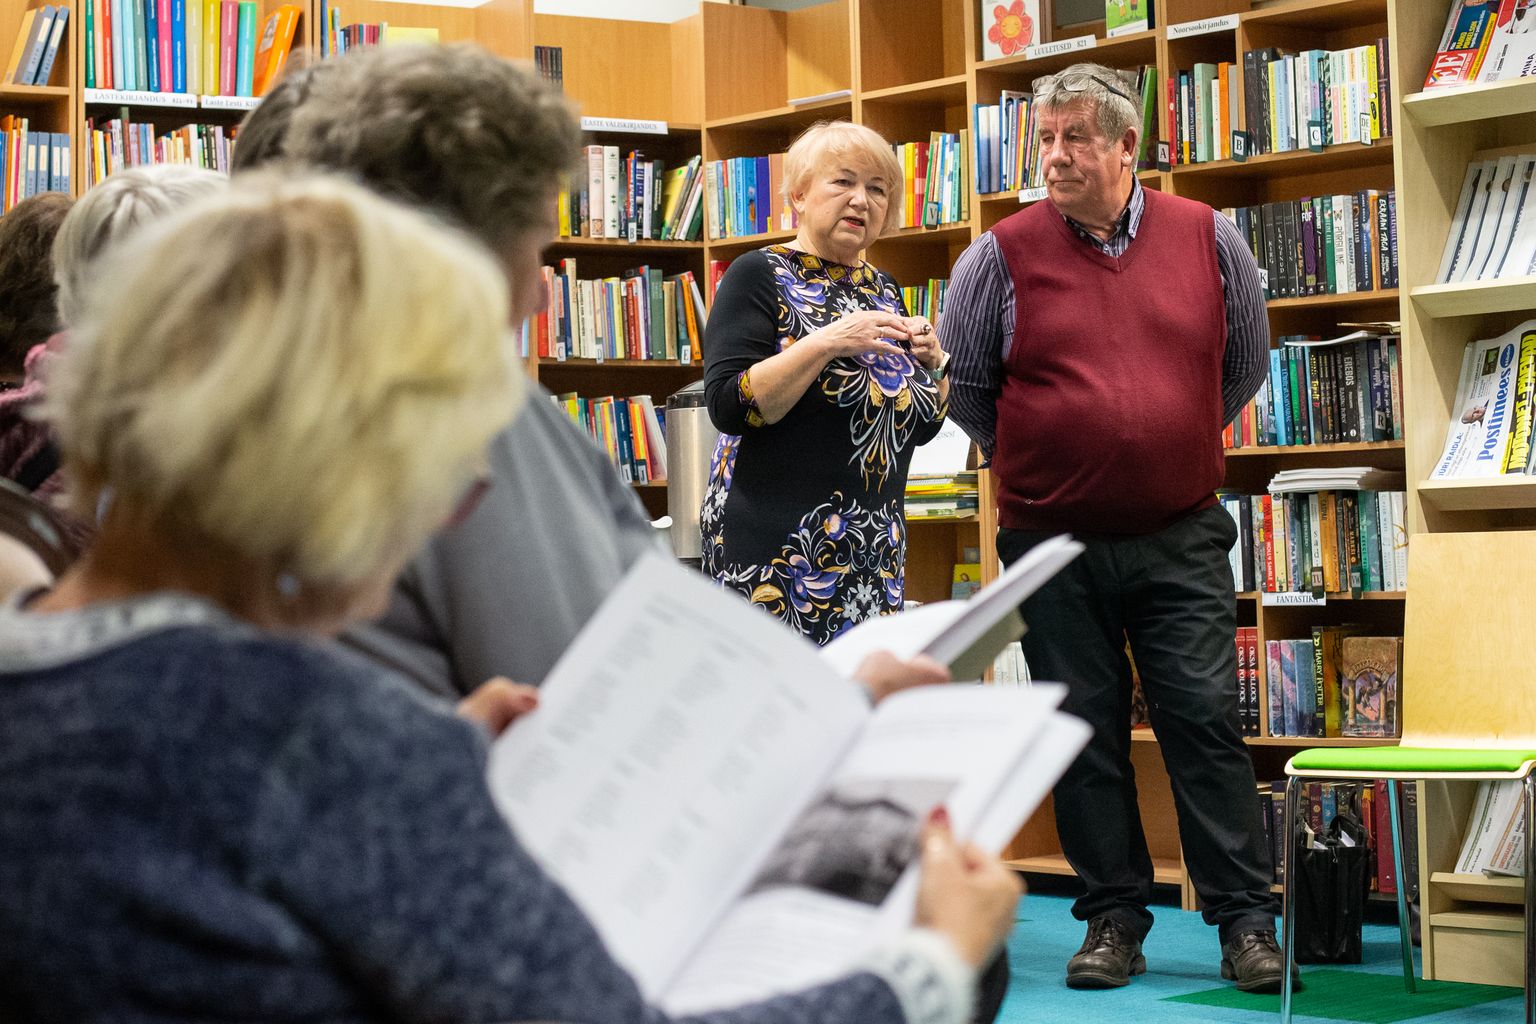 Ээви Паасмяэ и Эвальд Теэтлок рассказали в Синимяэской библиотеке о том, как родилась публикация об исчезнувших школах лаагнаского края.